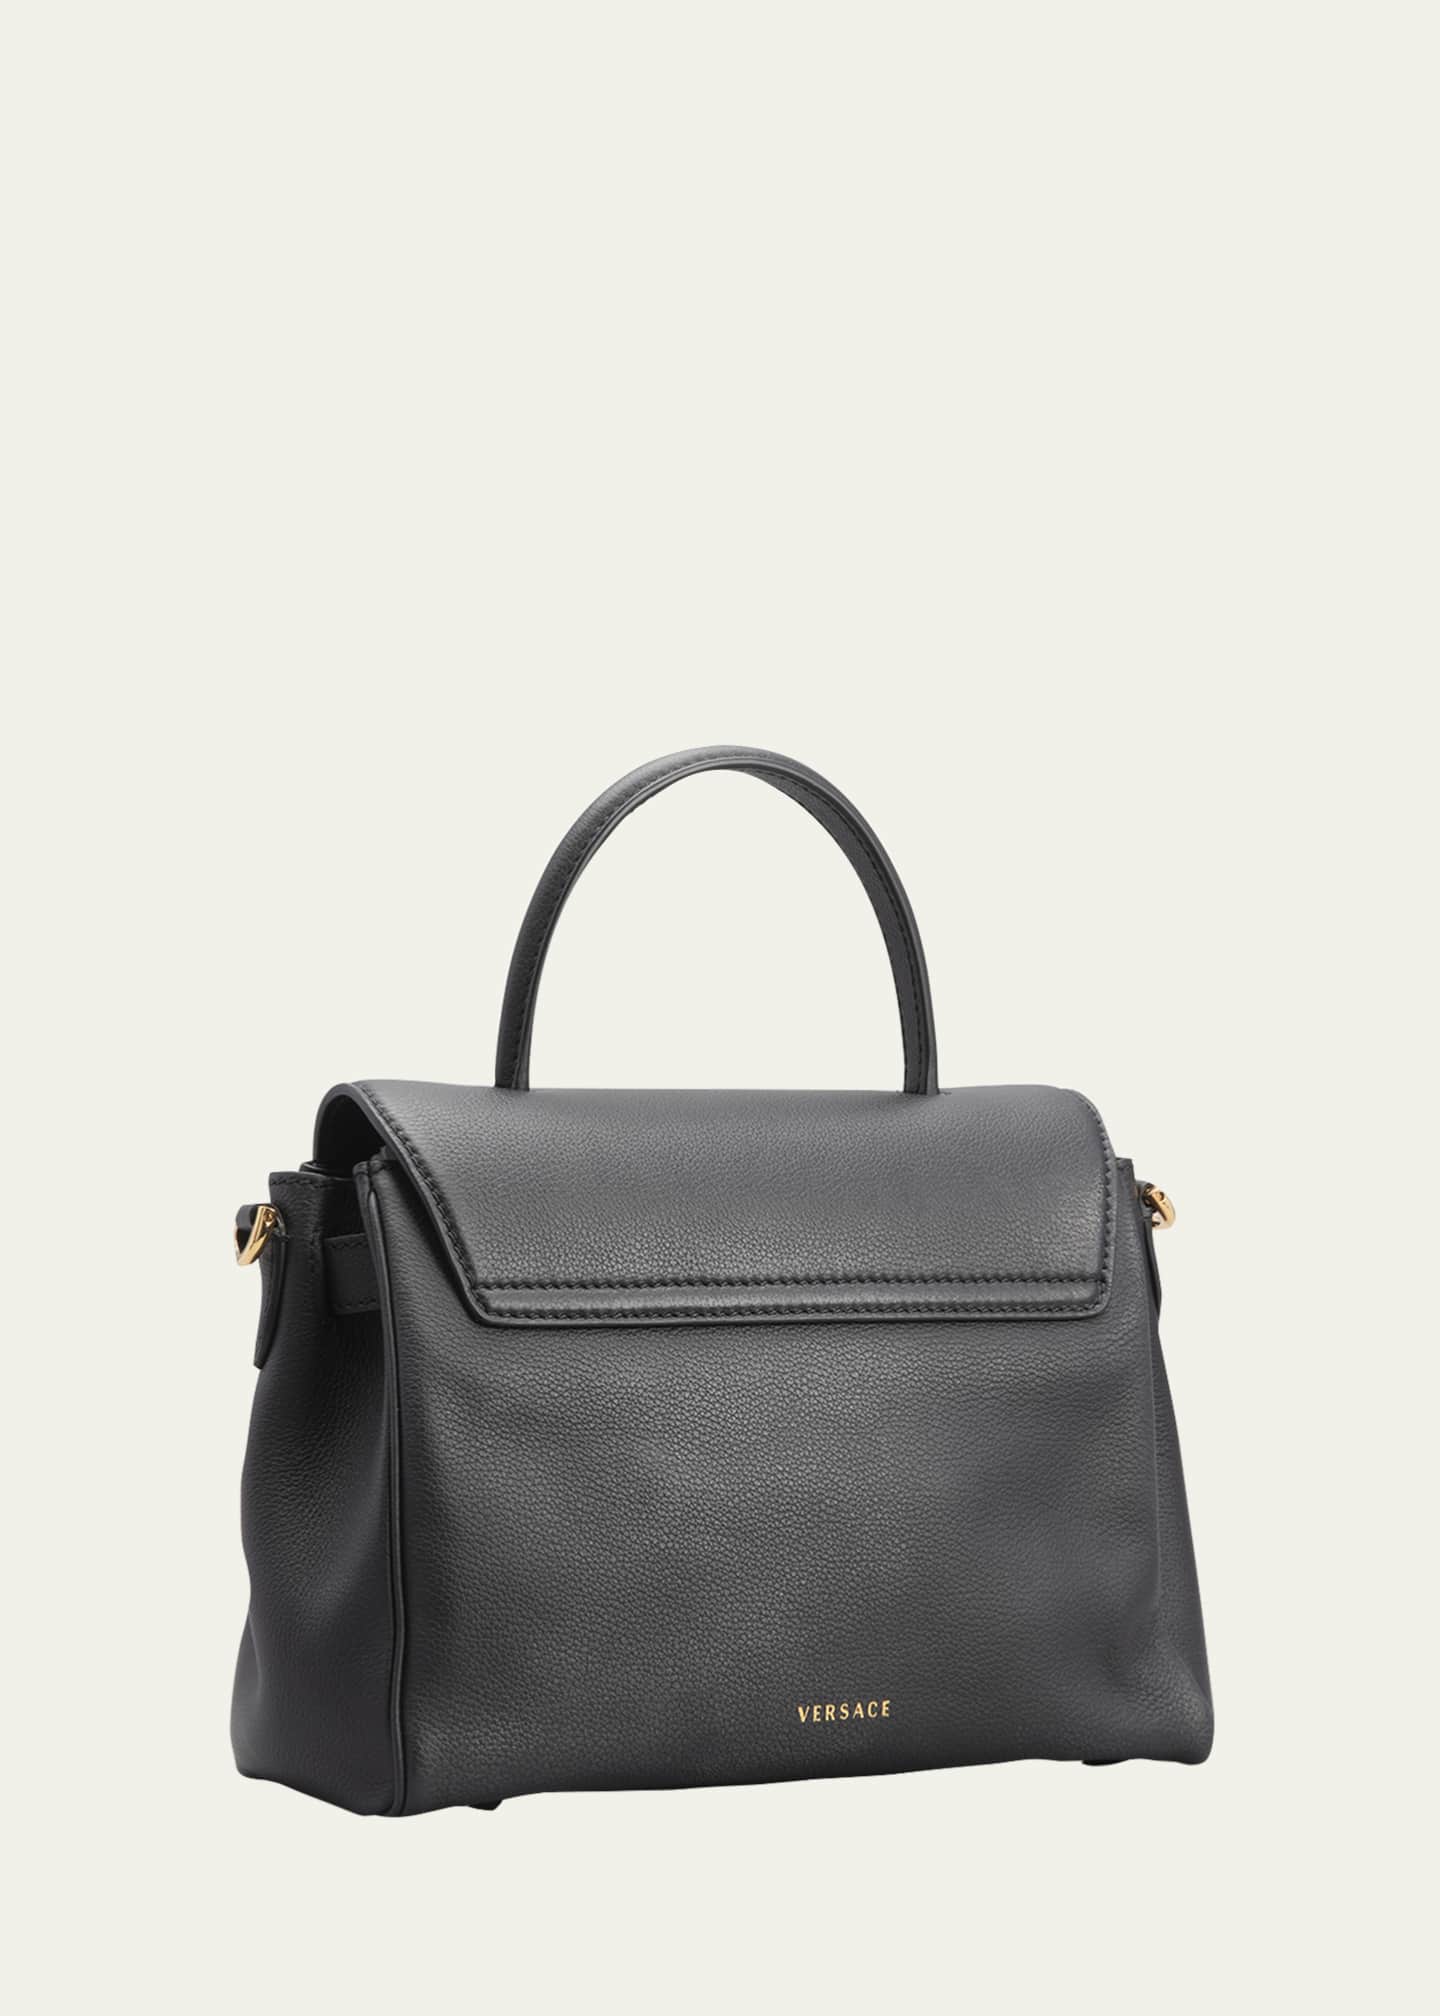 DBS Versace Bag (Premium Top Grade)